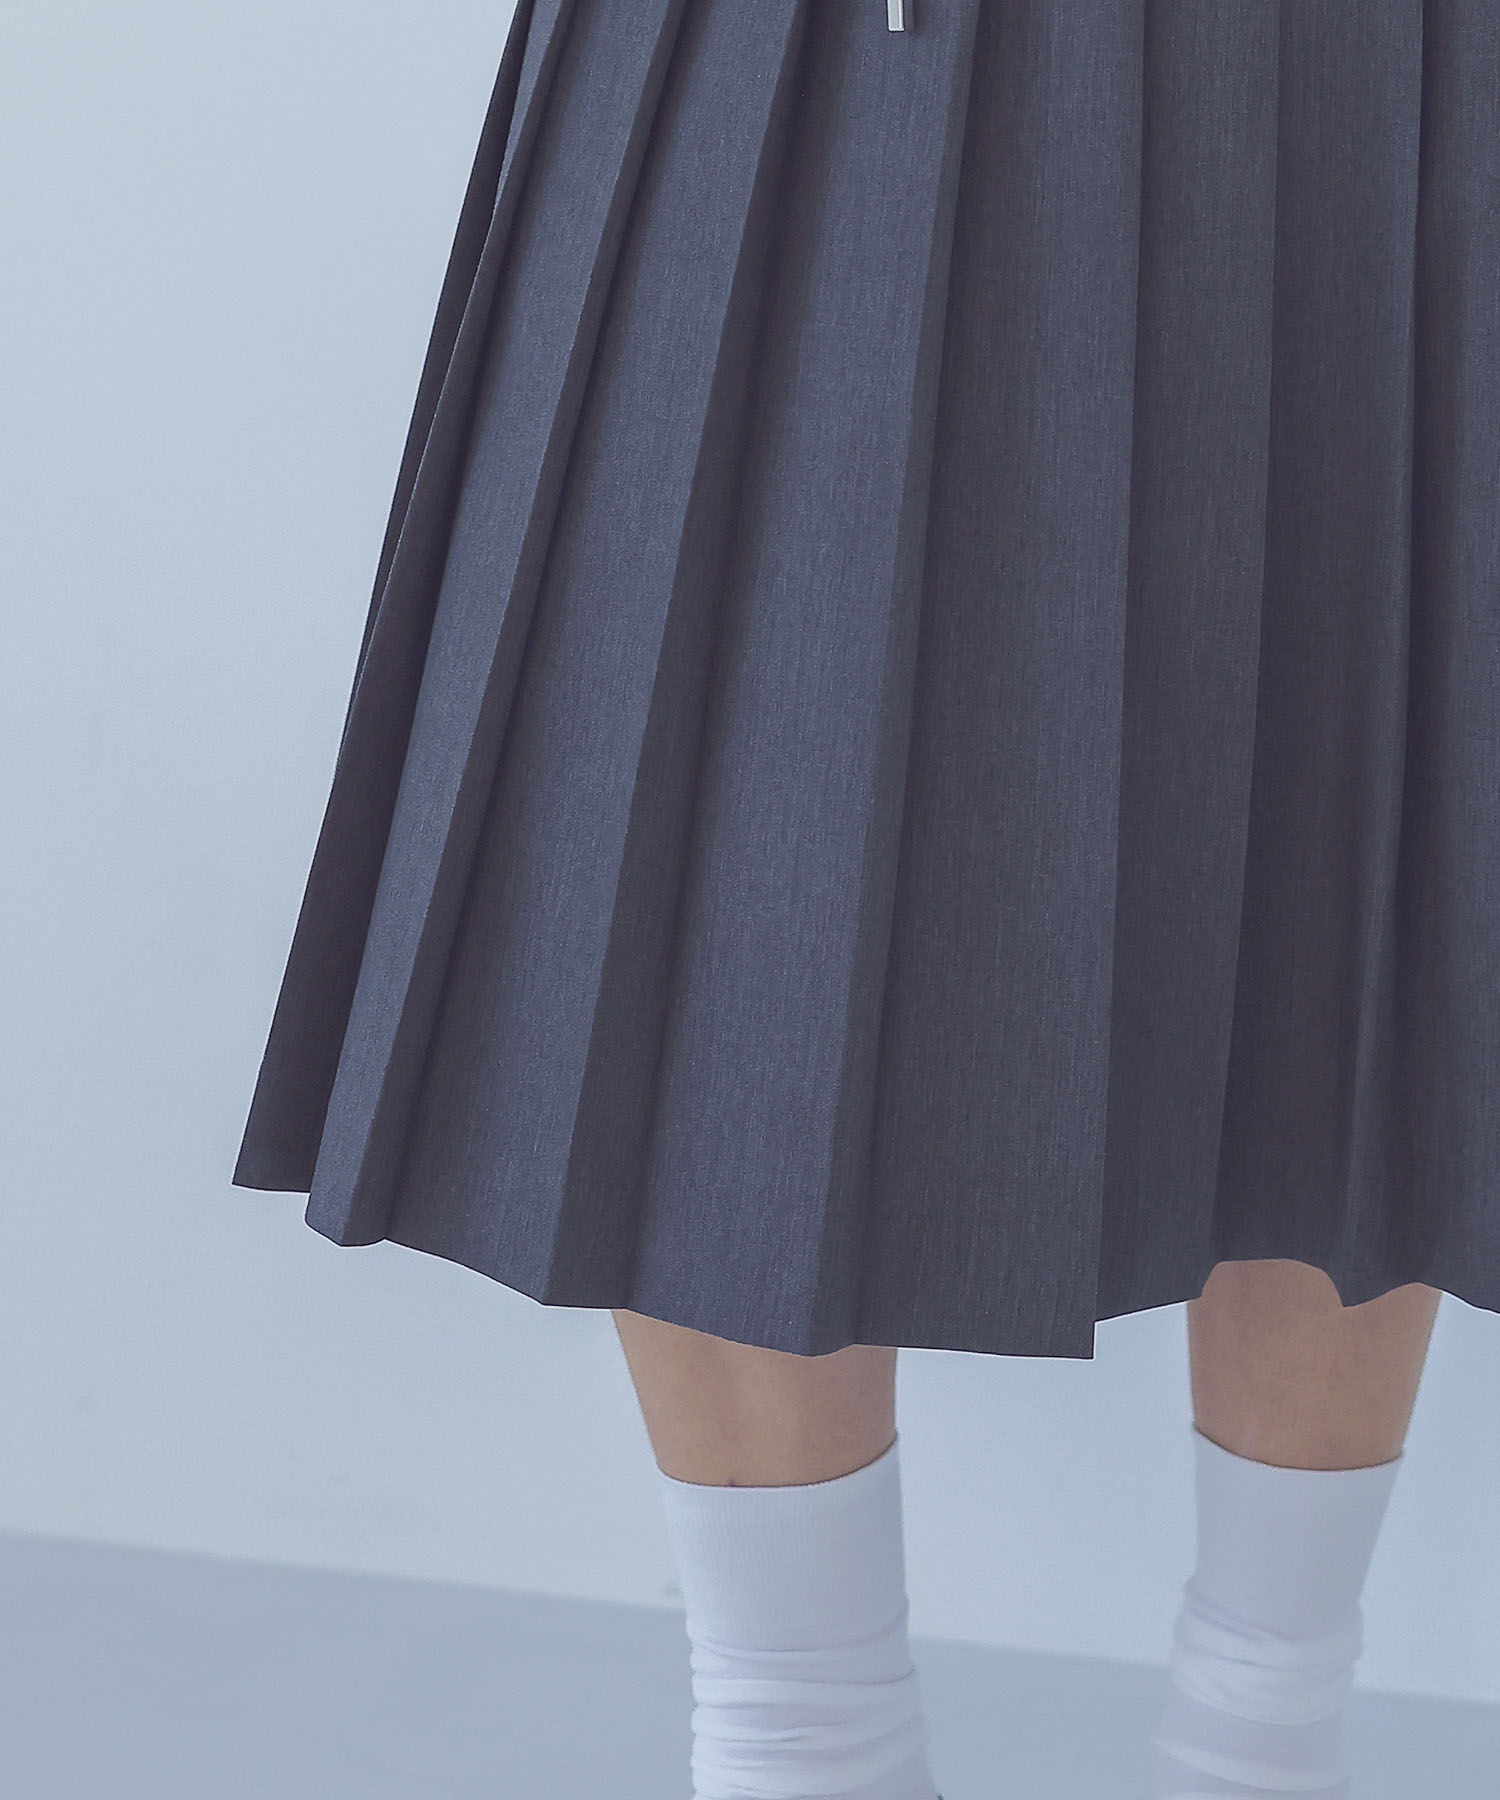 school pleats low waist skirt